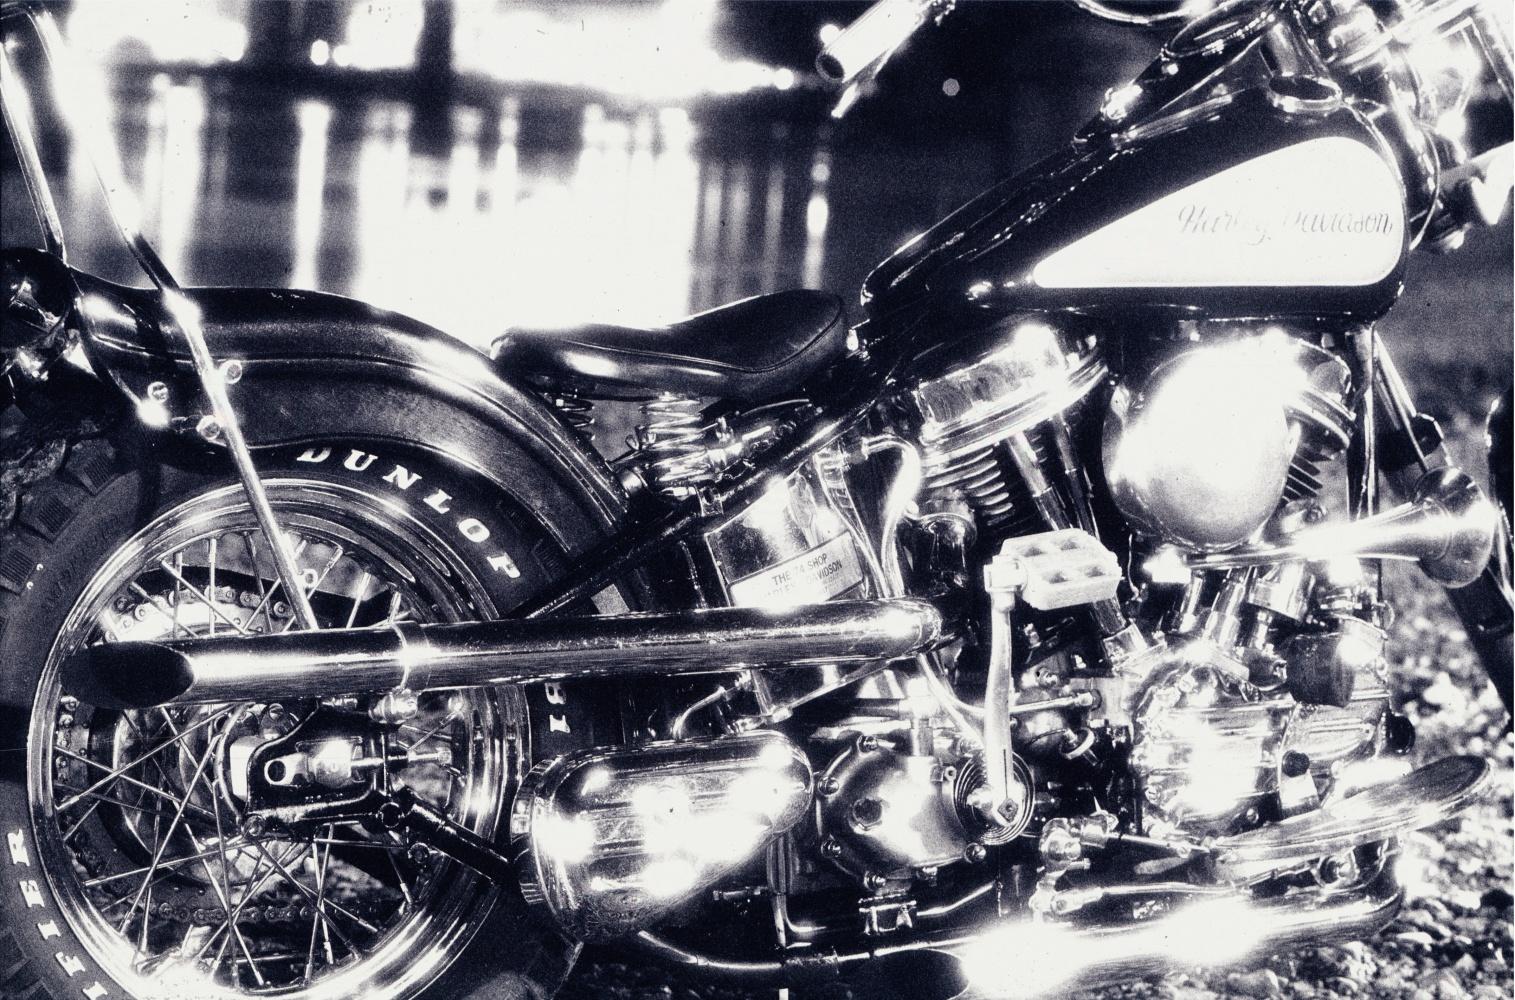 NICK KNIGHT (*1958, Grande-Bretagne) 
Harley, 1988
Impression pigmentaire couchée à la main
Feuille 142,5 x 209 cm (56 1/8 x 82 1/4 in.)
Edition de 5, plus 2 AP ; Ed. no. 3/5
Imprimer seulement

Nick Knight fait partie des photographes les plus